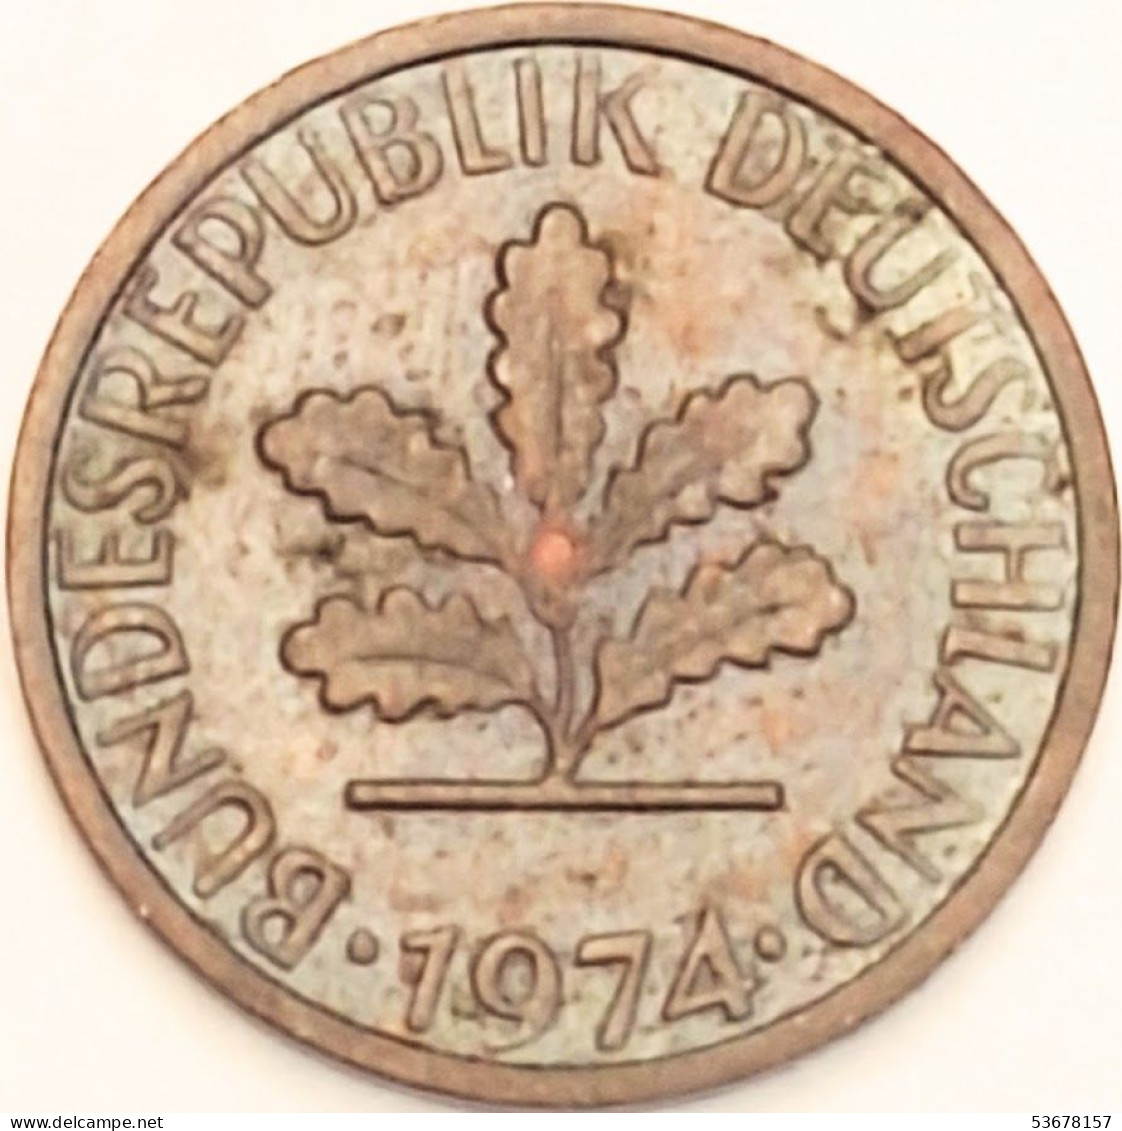 Germany Federal Republic - Pfennig 1974 F, KM# 105 (#4464) - 1 Pfennig